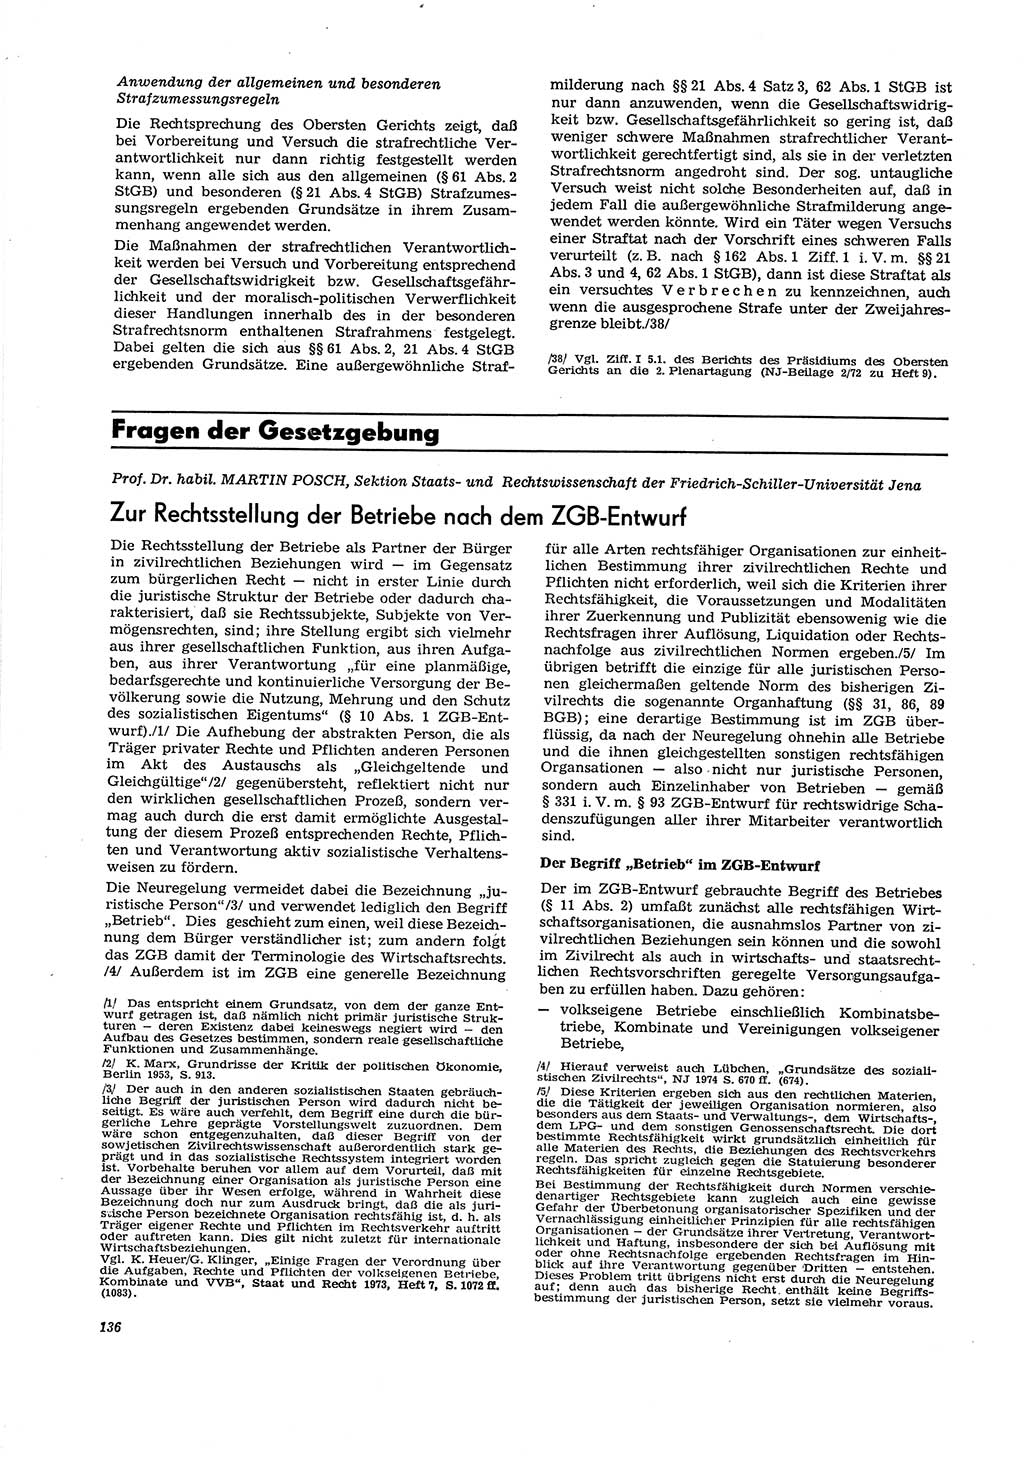 Neue Justiz (NJ), Zeitschrift für Recht und Rechtswissenschaft [Deutsche Demokratische Republik (DDR)], 29. Jahrgang 1975, Seite 136 (NJ DDR 1975, S. 136)